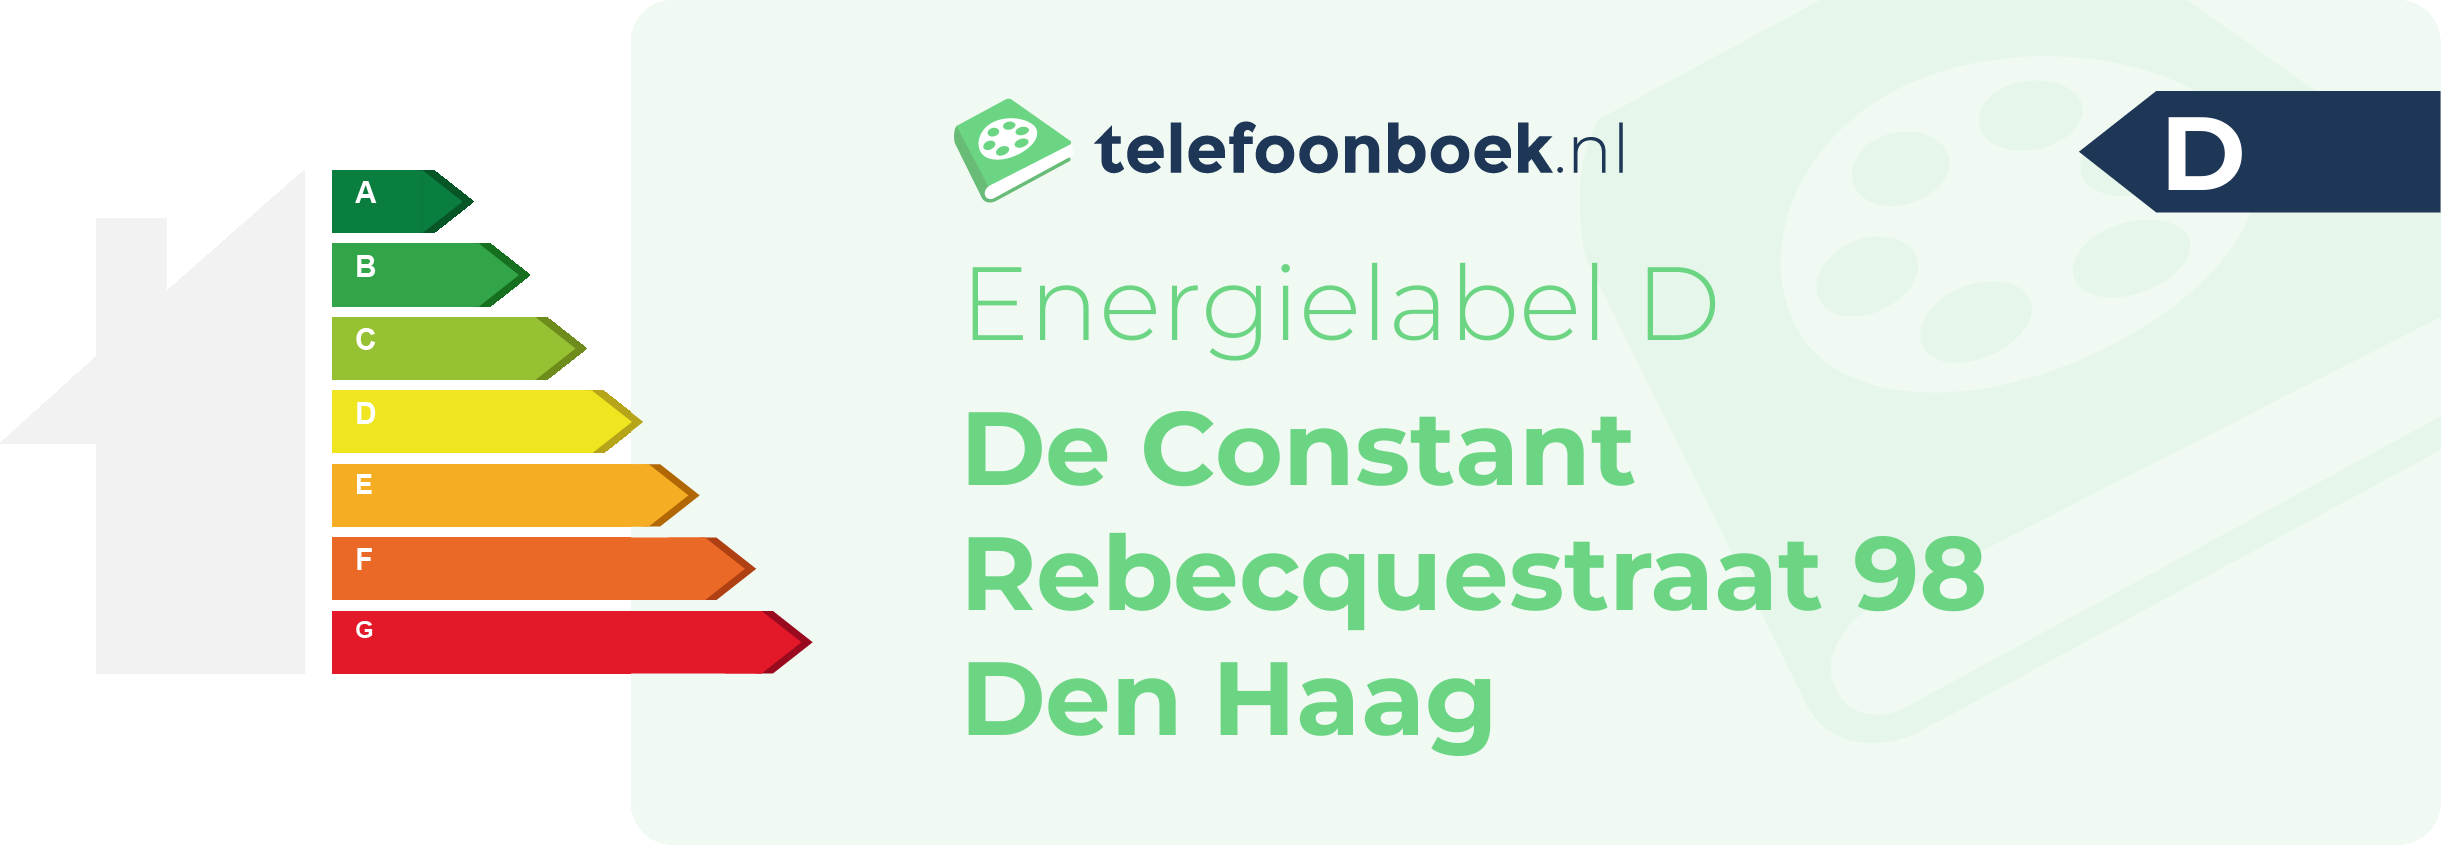 Energielabel De Constant Rebecquestraat 98 Den Haag